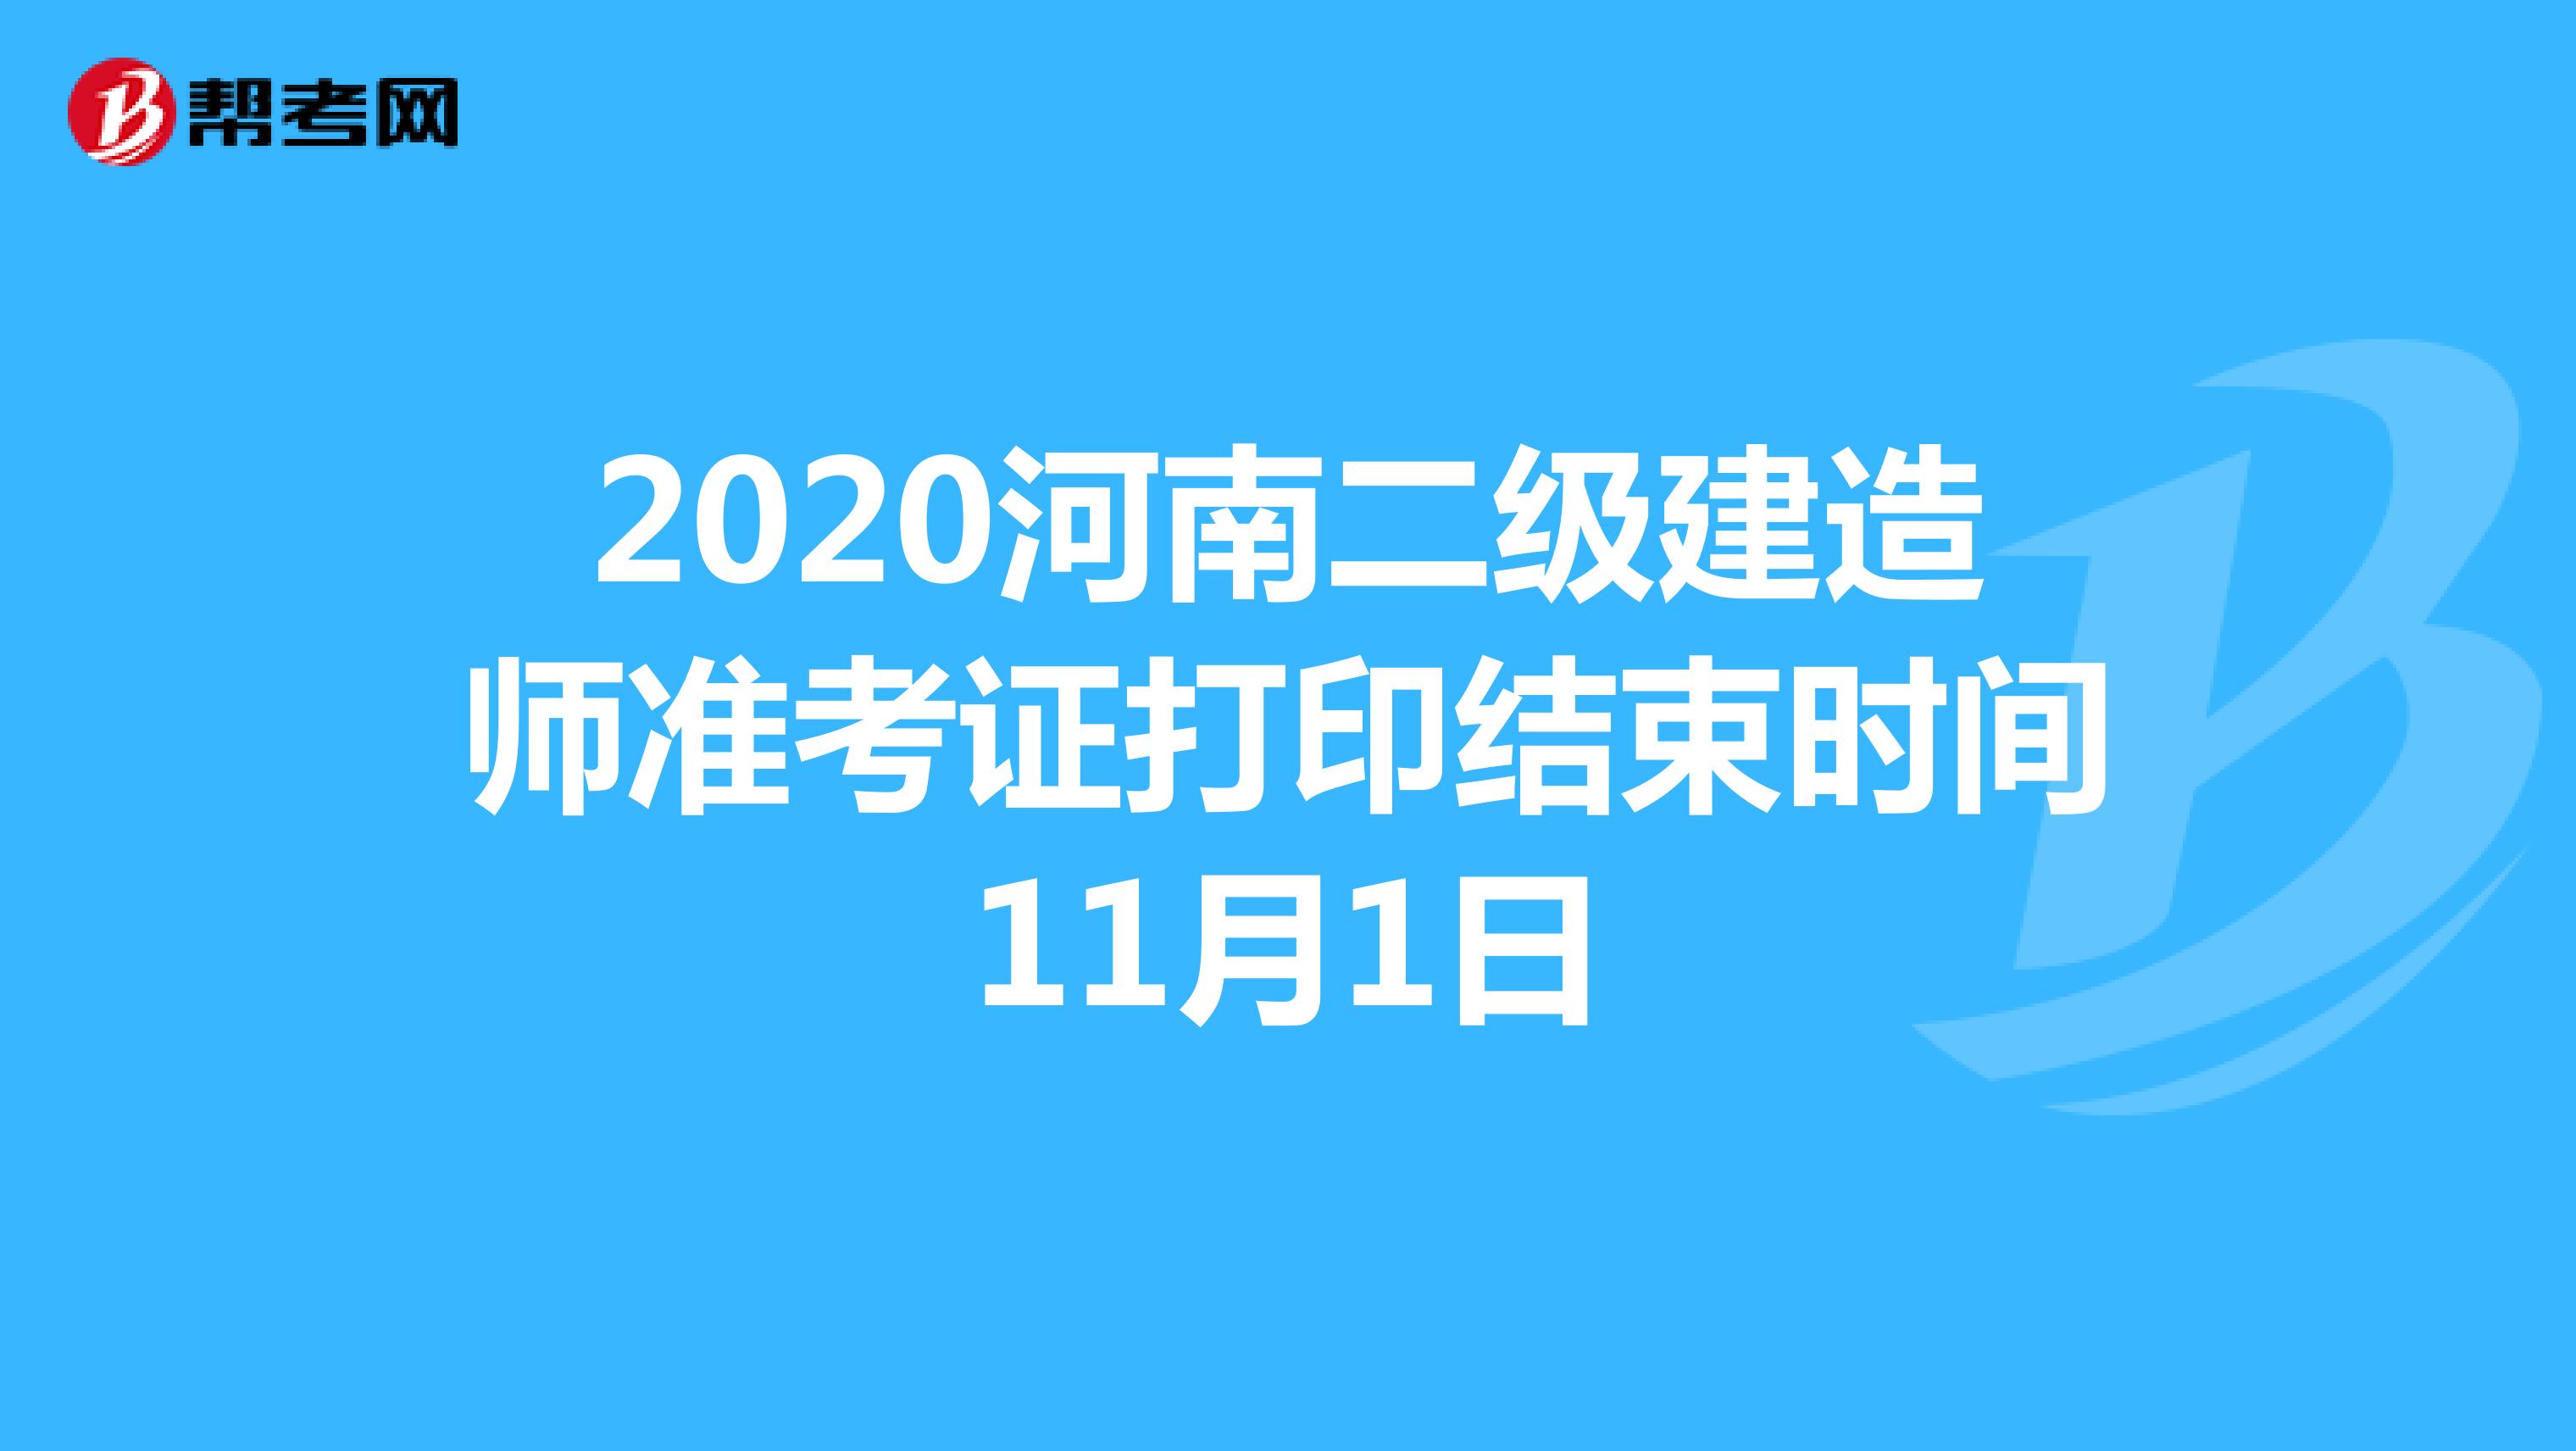 2020河南二级建造师准考证打印结束时间11月1日 